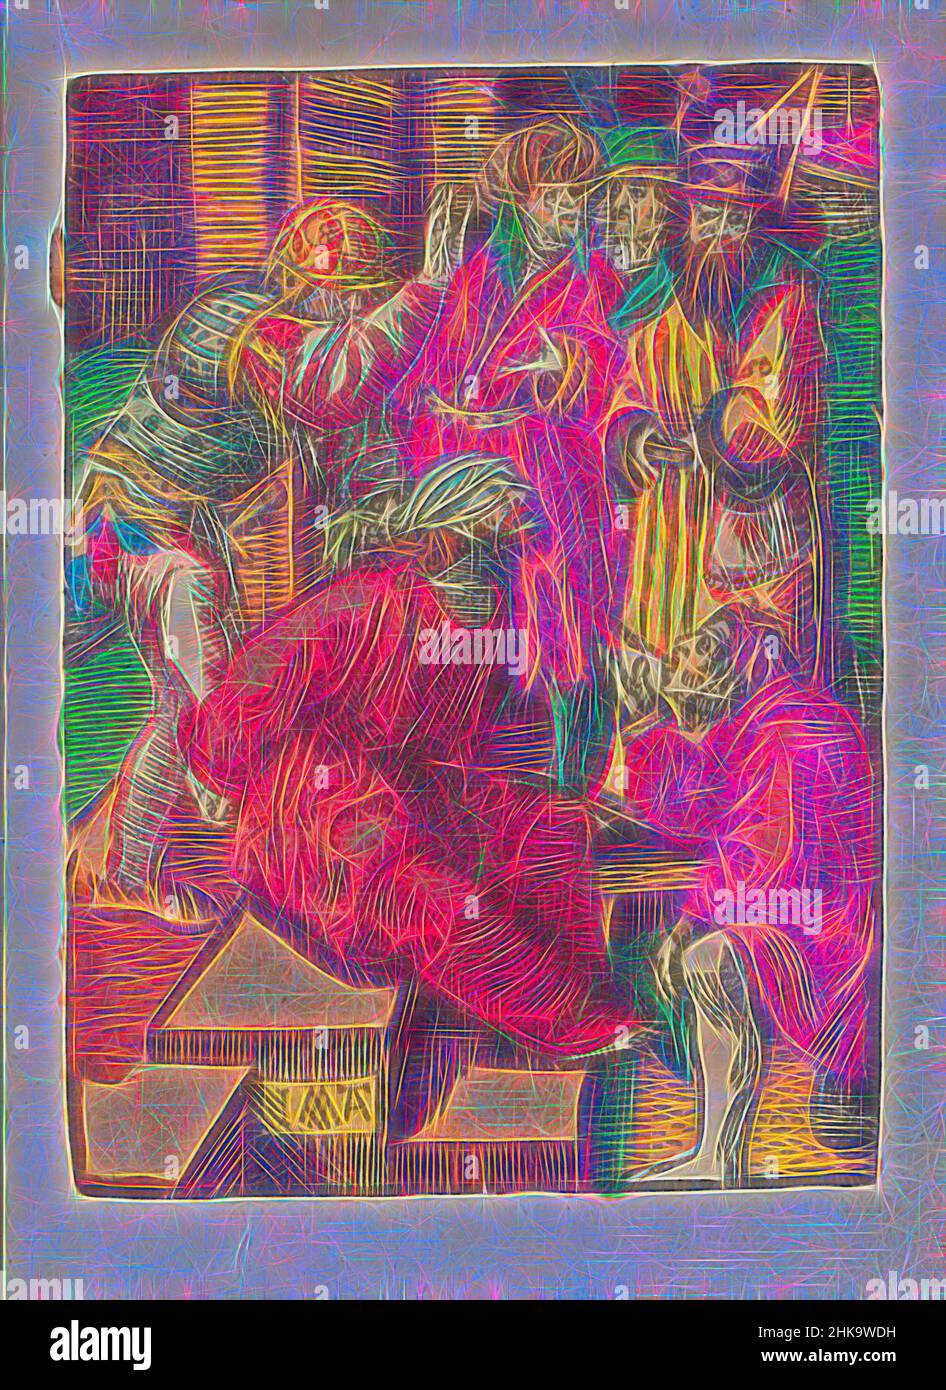 Ispirato dalla beffa, dalla piccola Passione, dalla stupida Passione, Cristo si siede accecato e con le mani legate a terra. Un uomo lo batte, un altro gli sputò in faccia. La stampa fa parte di un libro., tipografia: Jacob Cornelisz van Oostsanen, editore: Doen Pietersz., Amsterdam, 1520 - 1521 e/o c.. 1530, reinventato da Artotop. L'arte classica reinventata con un tocco moderno. Design di calda e allegra luminosità e di raggi di luce. La fotografia si ispira al surrealismo e al futurismo, abbracciando l'energia dinamica della tecnologia moderna, del movimento, della velocità e rivoluzionando la cultura Foto Stock